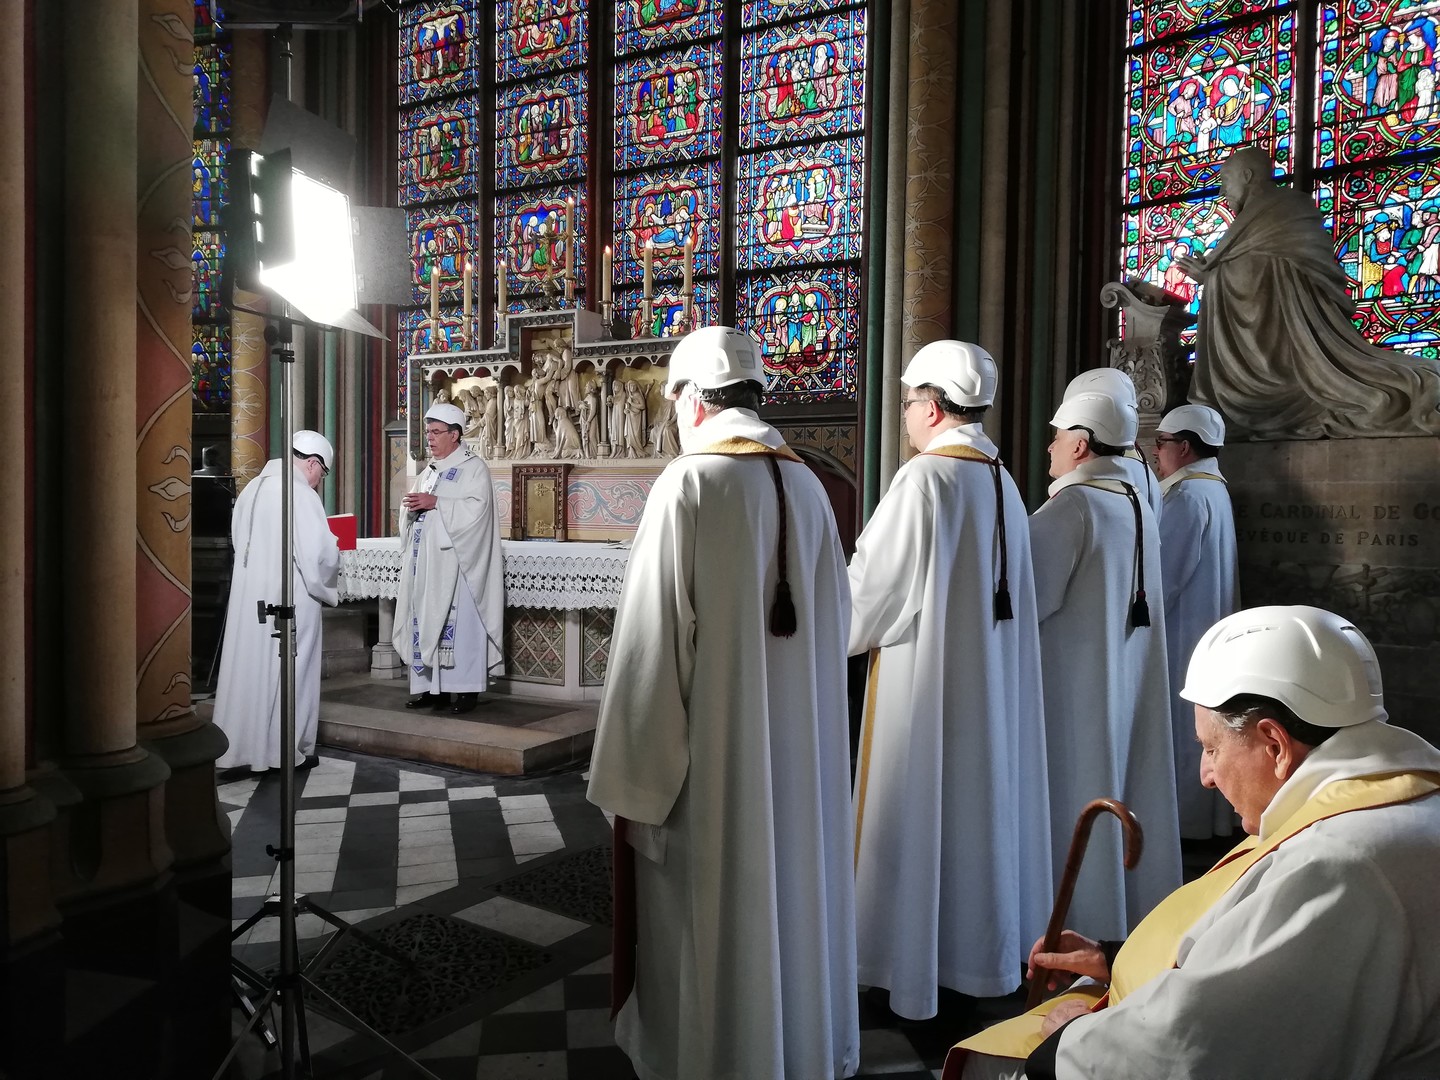 Aubes et casques de chantier : la première messe depuis l'incendie célébrée à Notre-Dame (IMAGES)